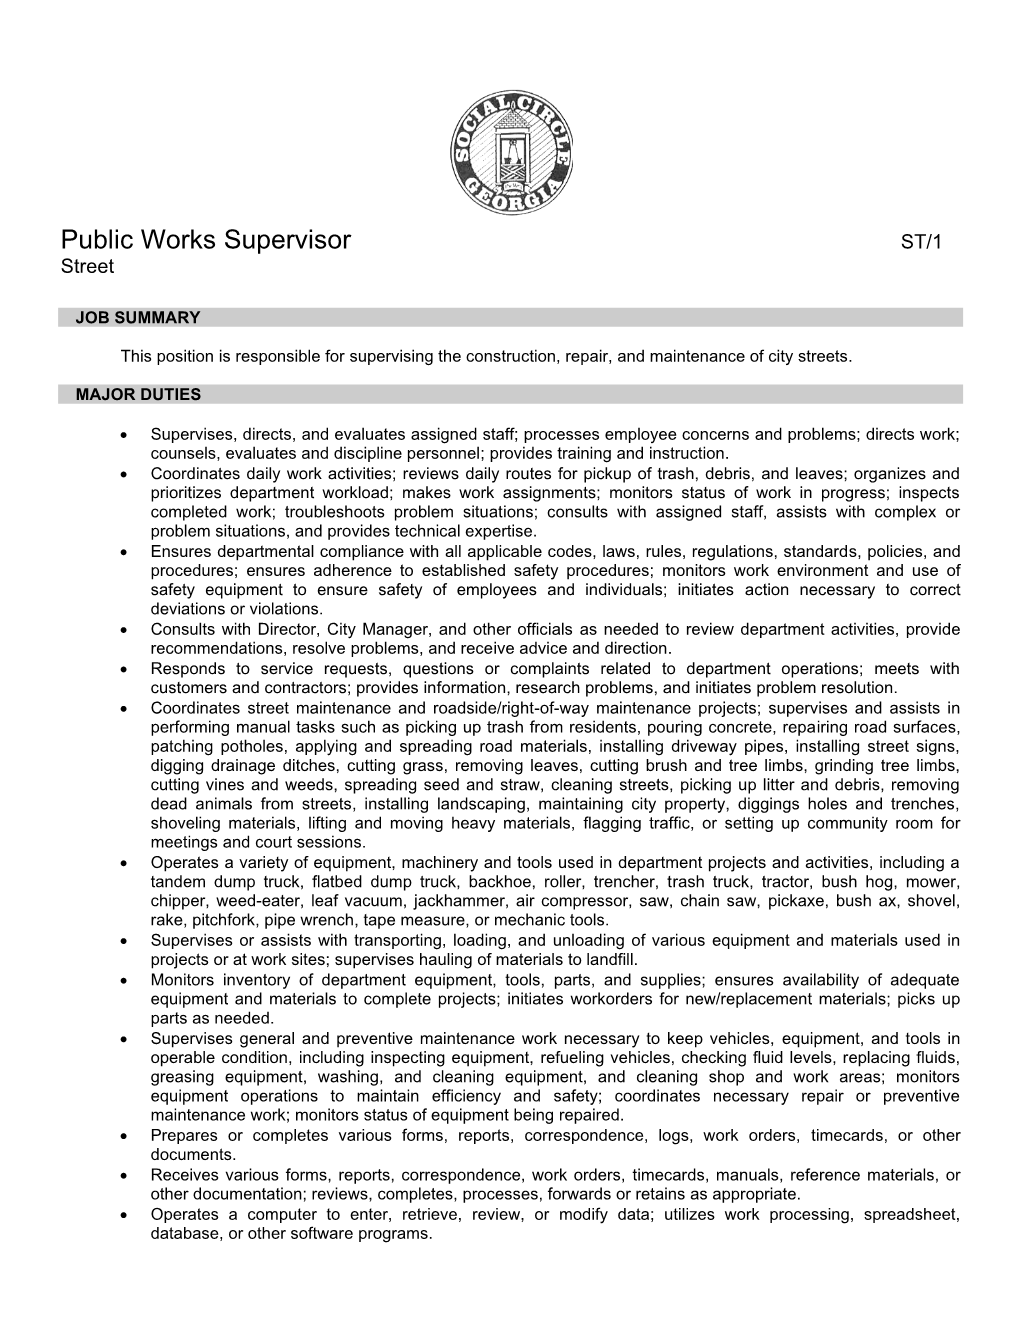 PW01 – Public Works Supervisor